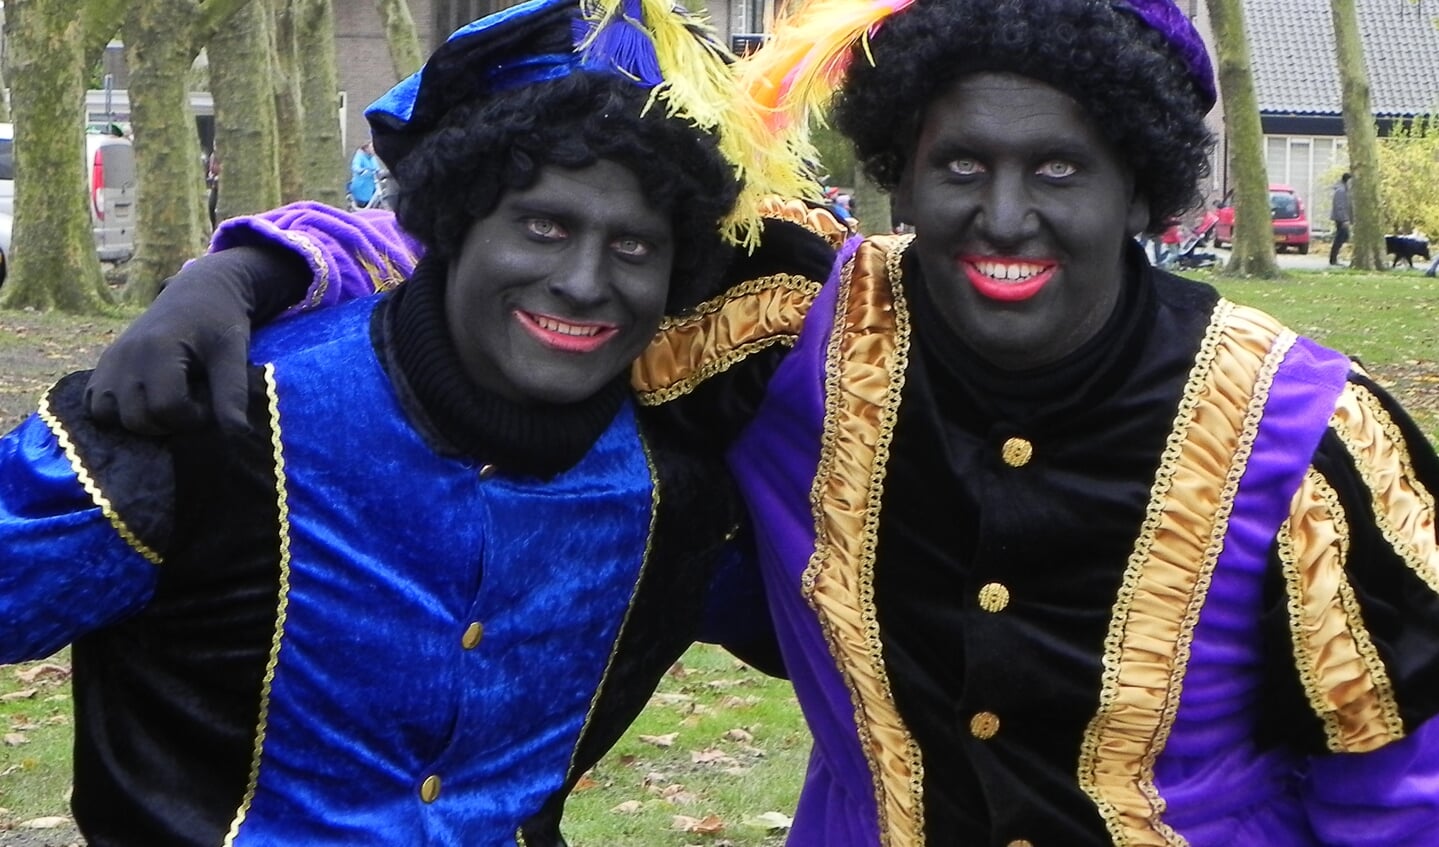 Vroklijk lachende Zwarte Pieten zorgden voor een leuke sfeer.